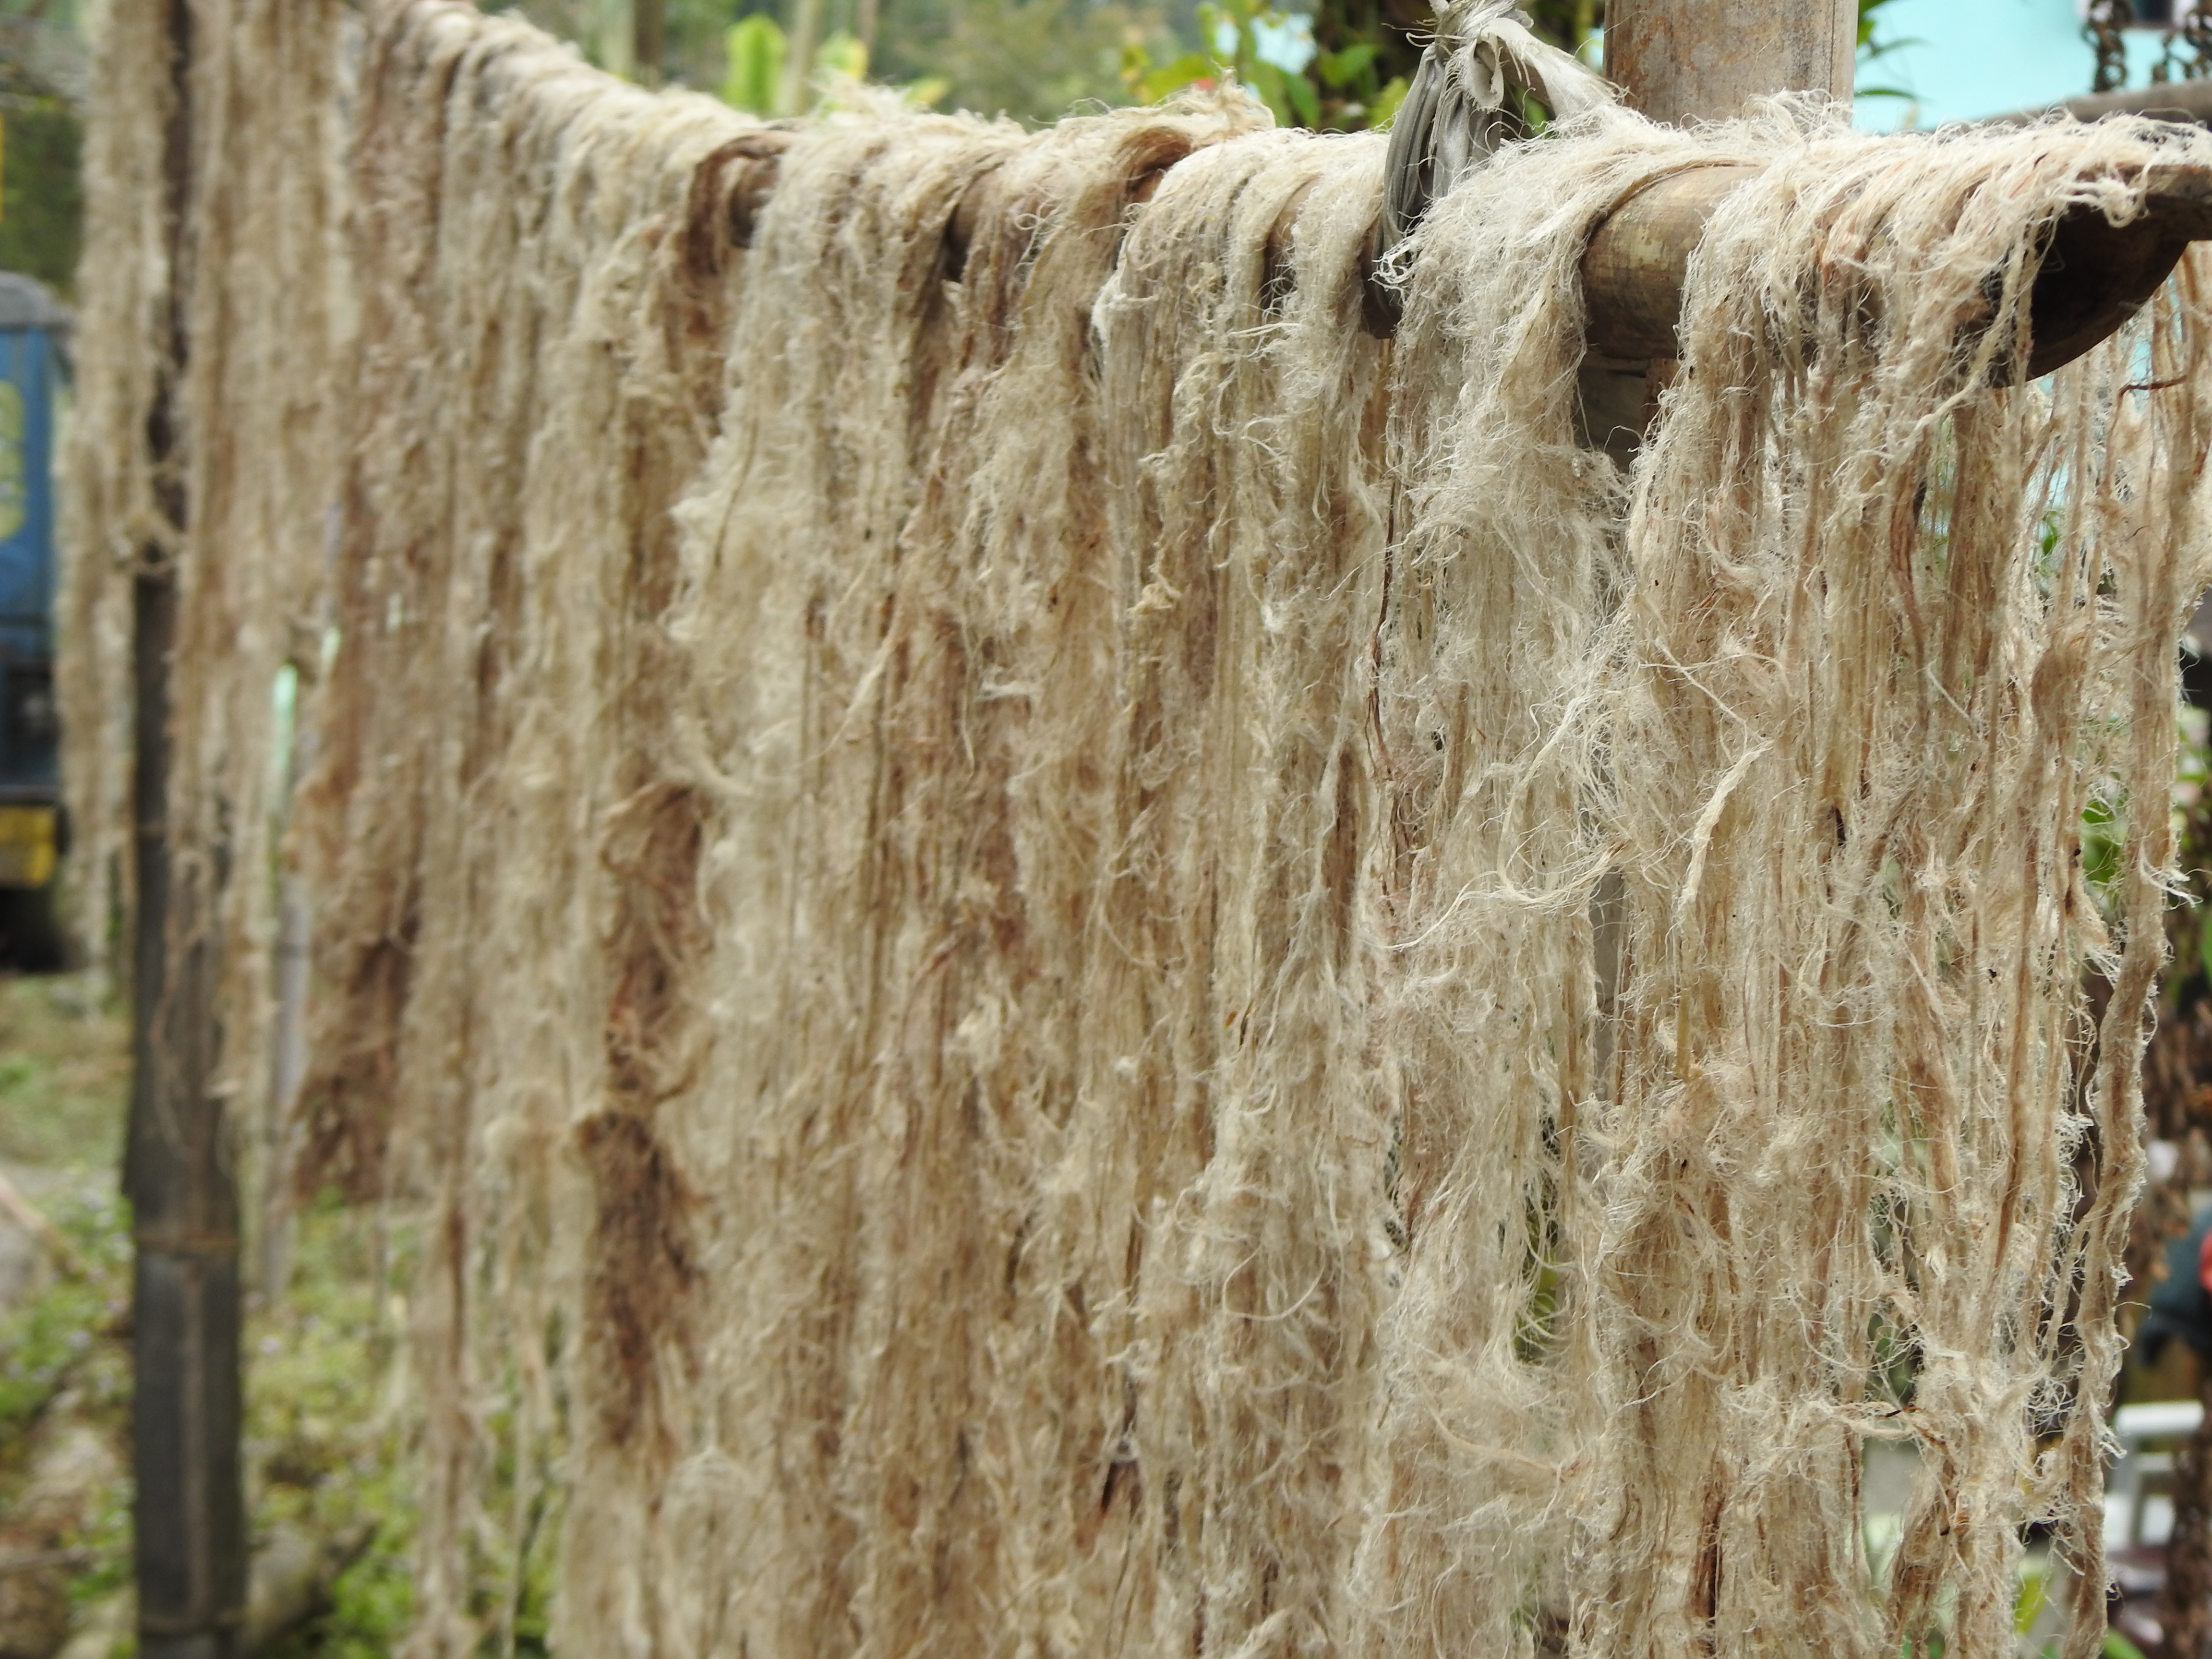 Nettle fibre drying